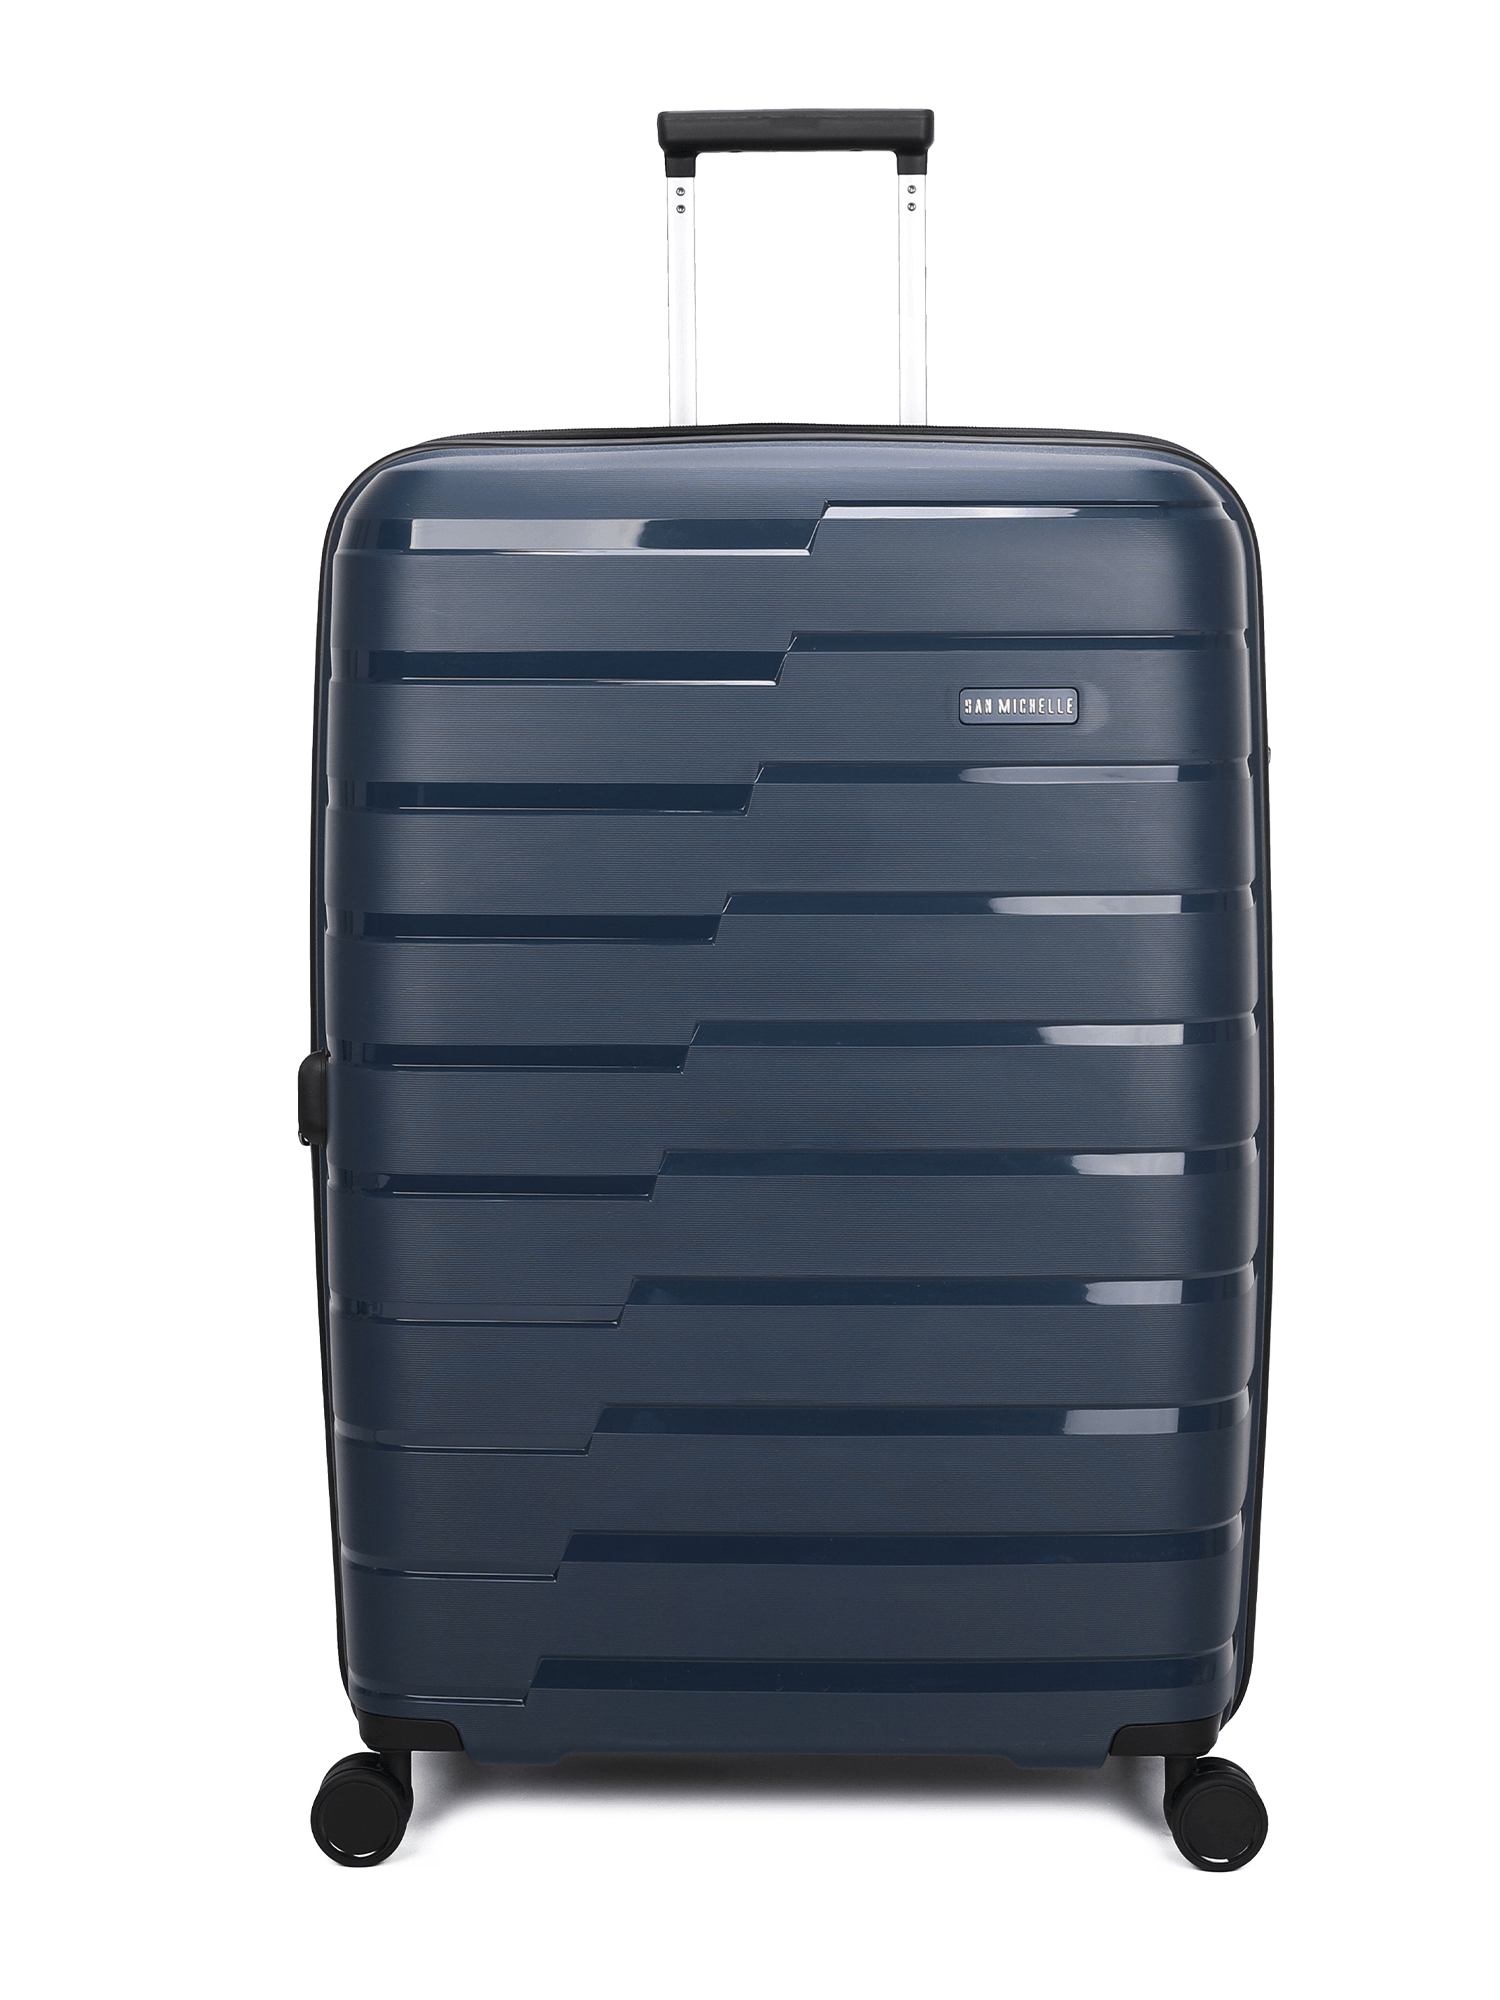 San Michelle Air Explorer 77cm Suitcase - San Michelle Bags suitcase nz